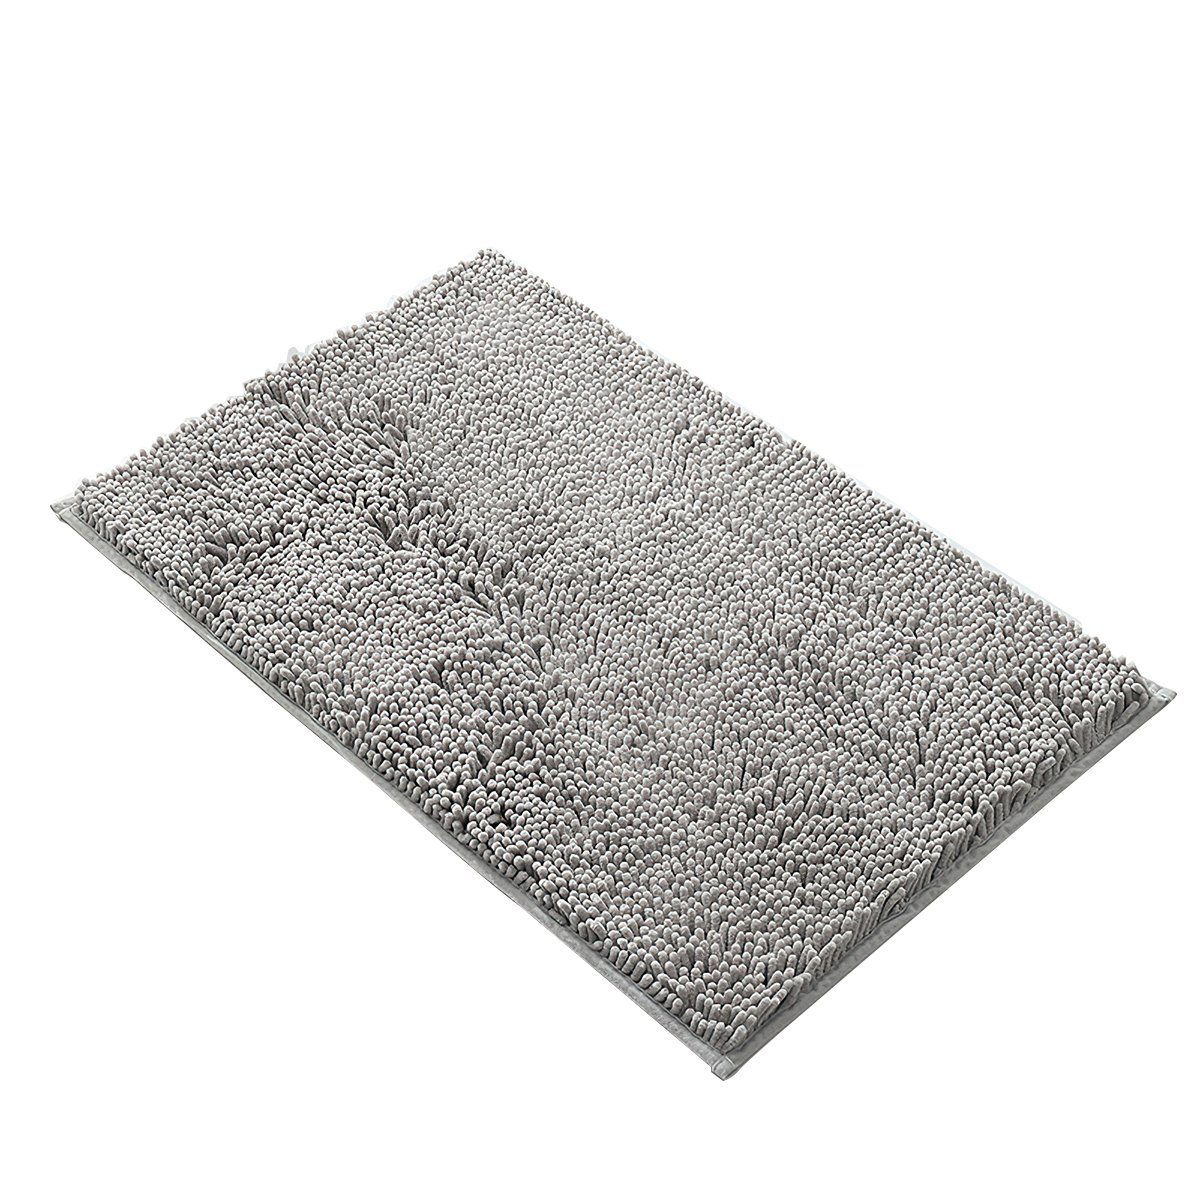 Schmutzabweisende Fußmatte, Antirutschmatte für den Innen- und Außenbereich,  Super saugfähige Eingangsmatte, Maschinenwaschbar, Weichbodenmatte  (Braun-Blau, 50